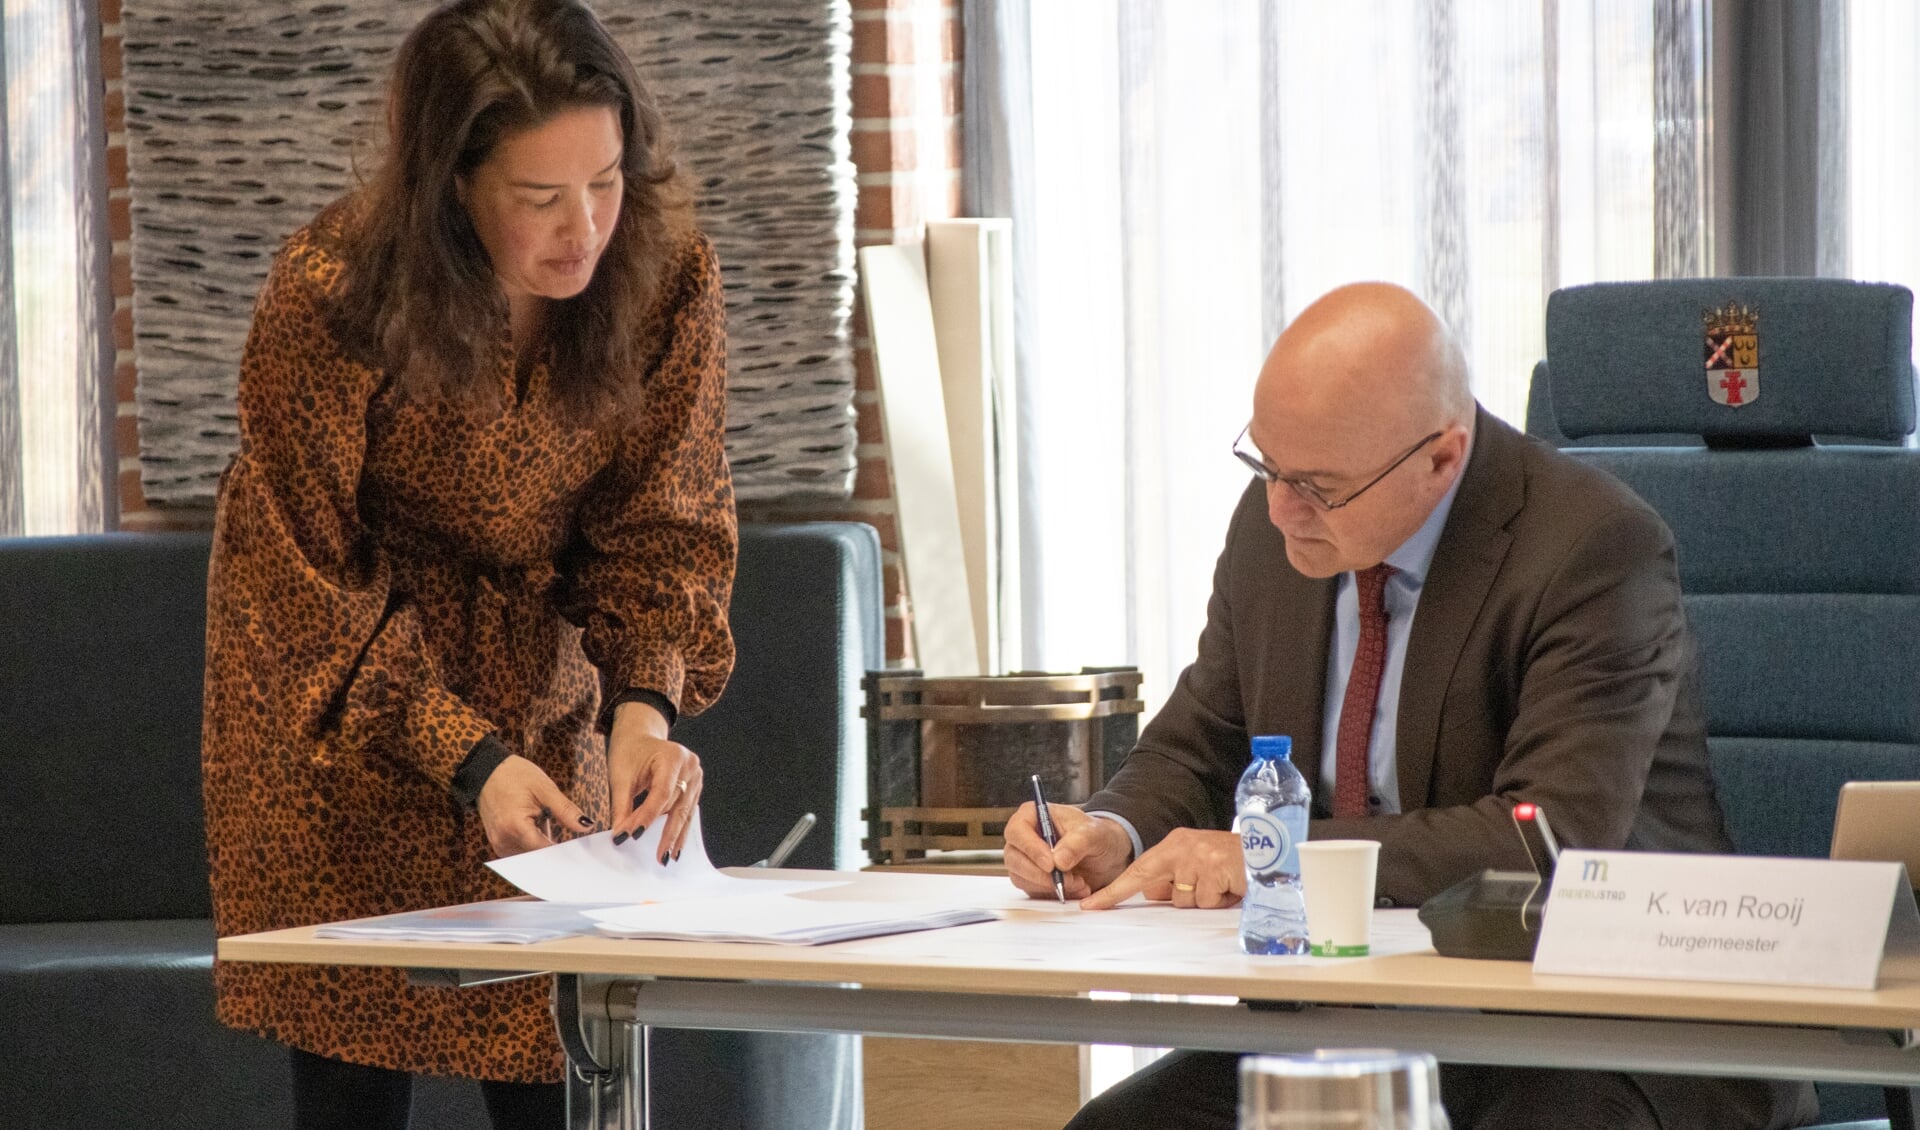 Burgemeester Kees van Rooij (R) tekent het proces-verbaal. Mijke Soejoko, projectleider verkiezingen, kijkt toe.